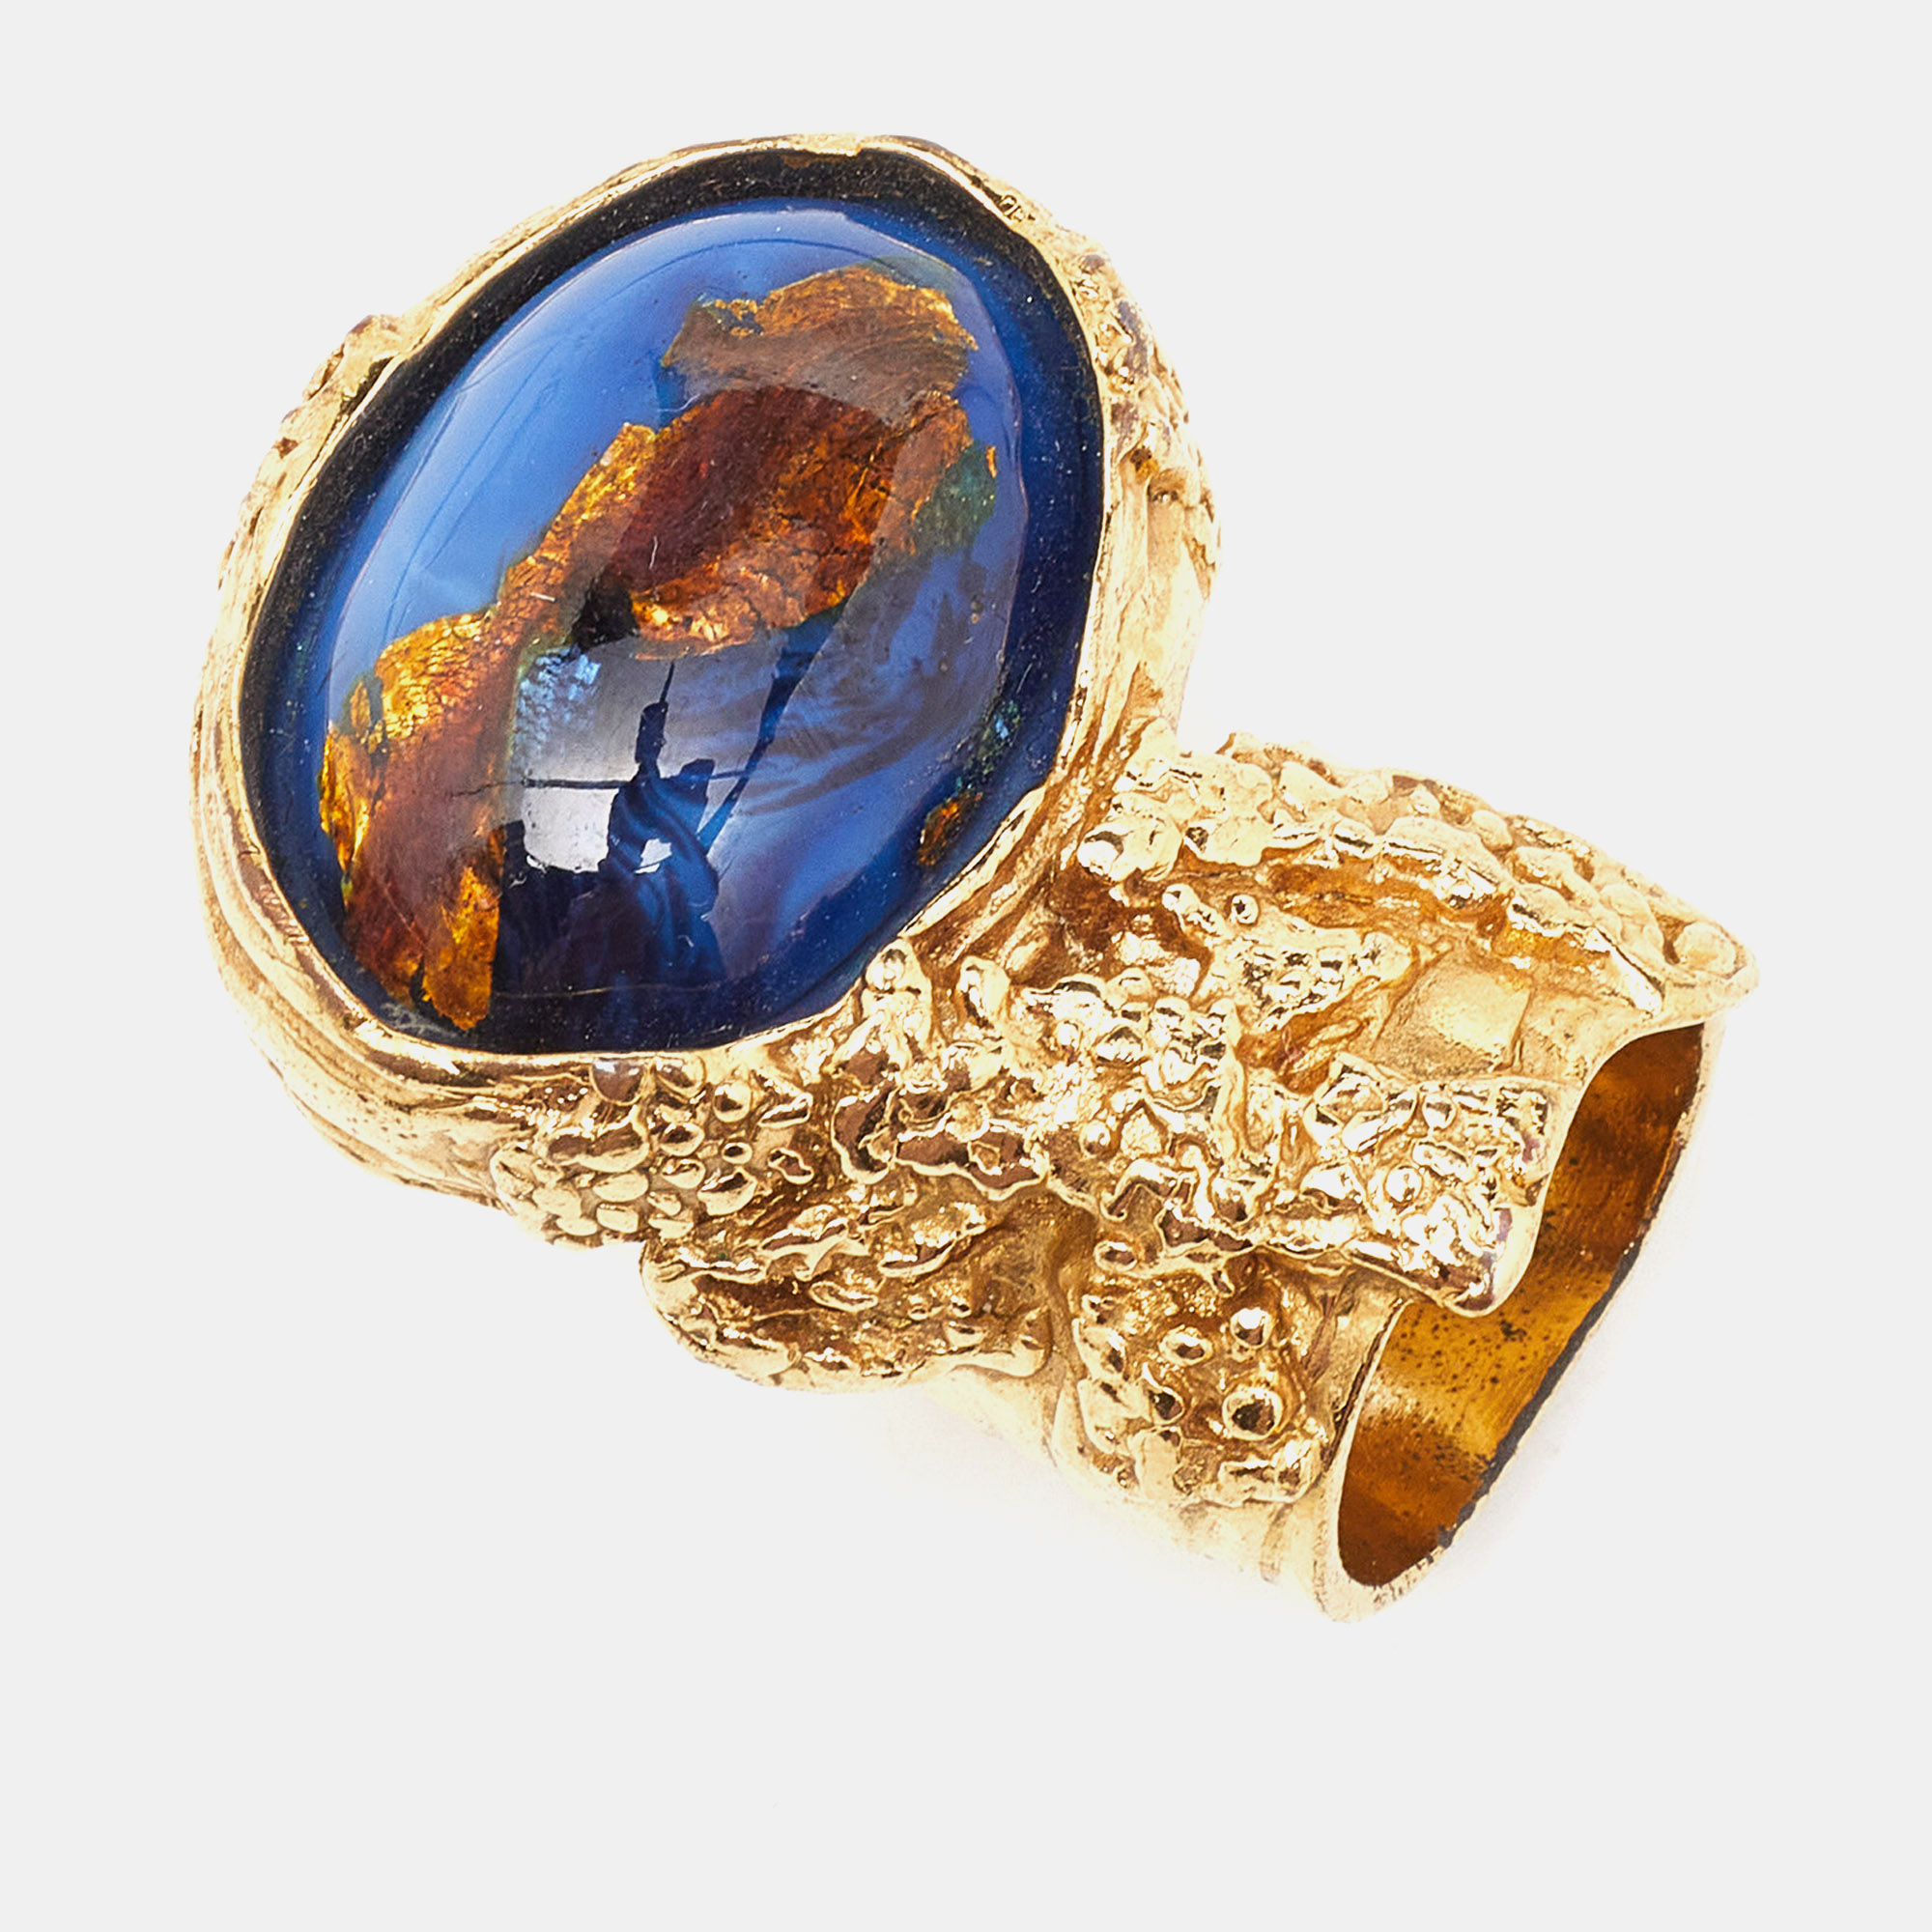 Saint laurent paris saint laurent arty blue glass cabochon gold tone ring size 52